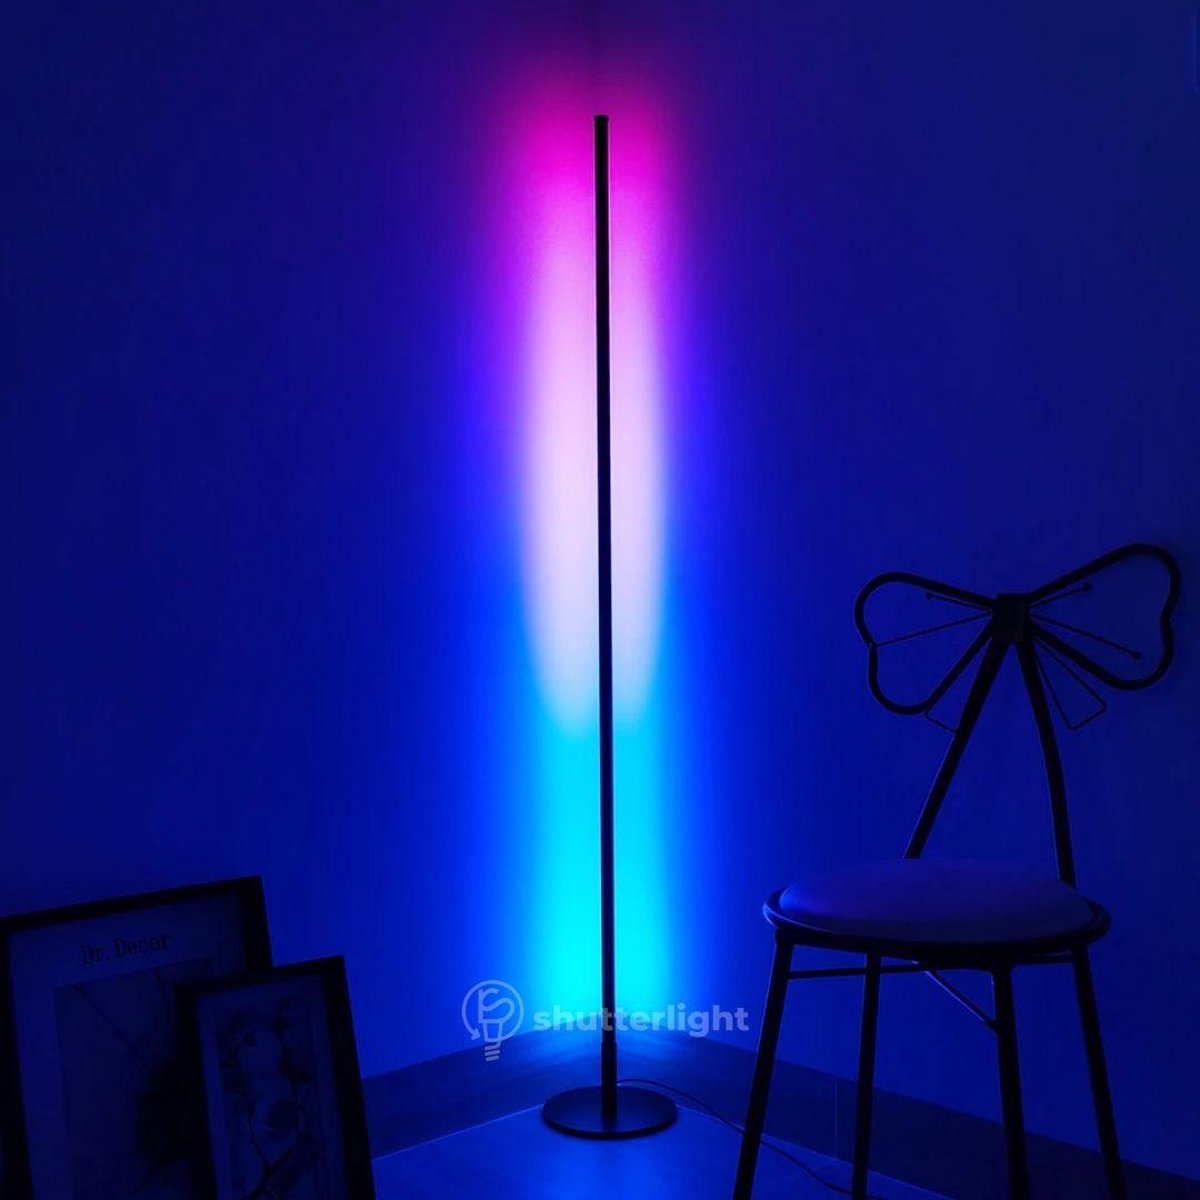 Shutterlight® Vloerlamp - Verticaal - RGBW LED - 150 cm - Zwart